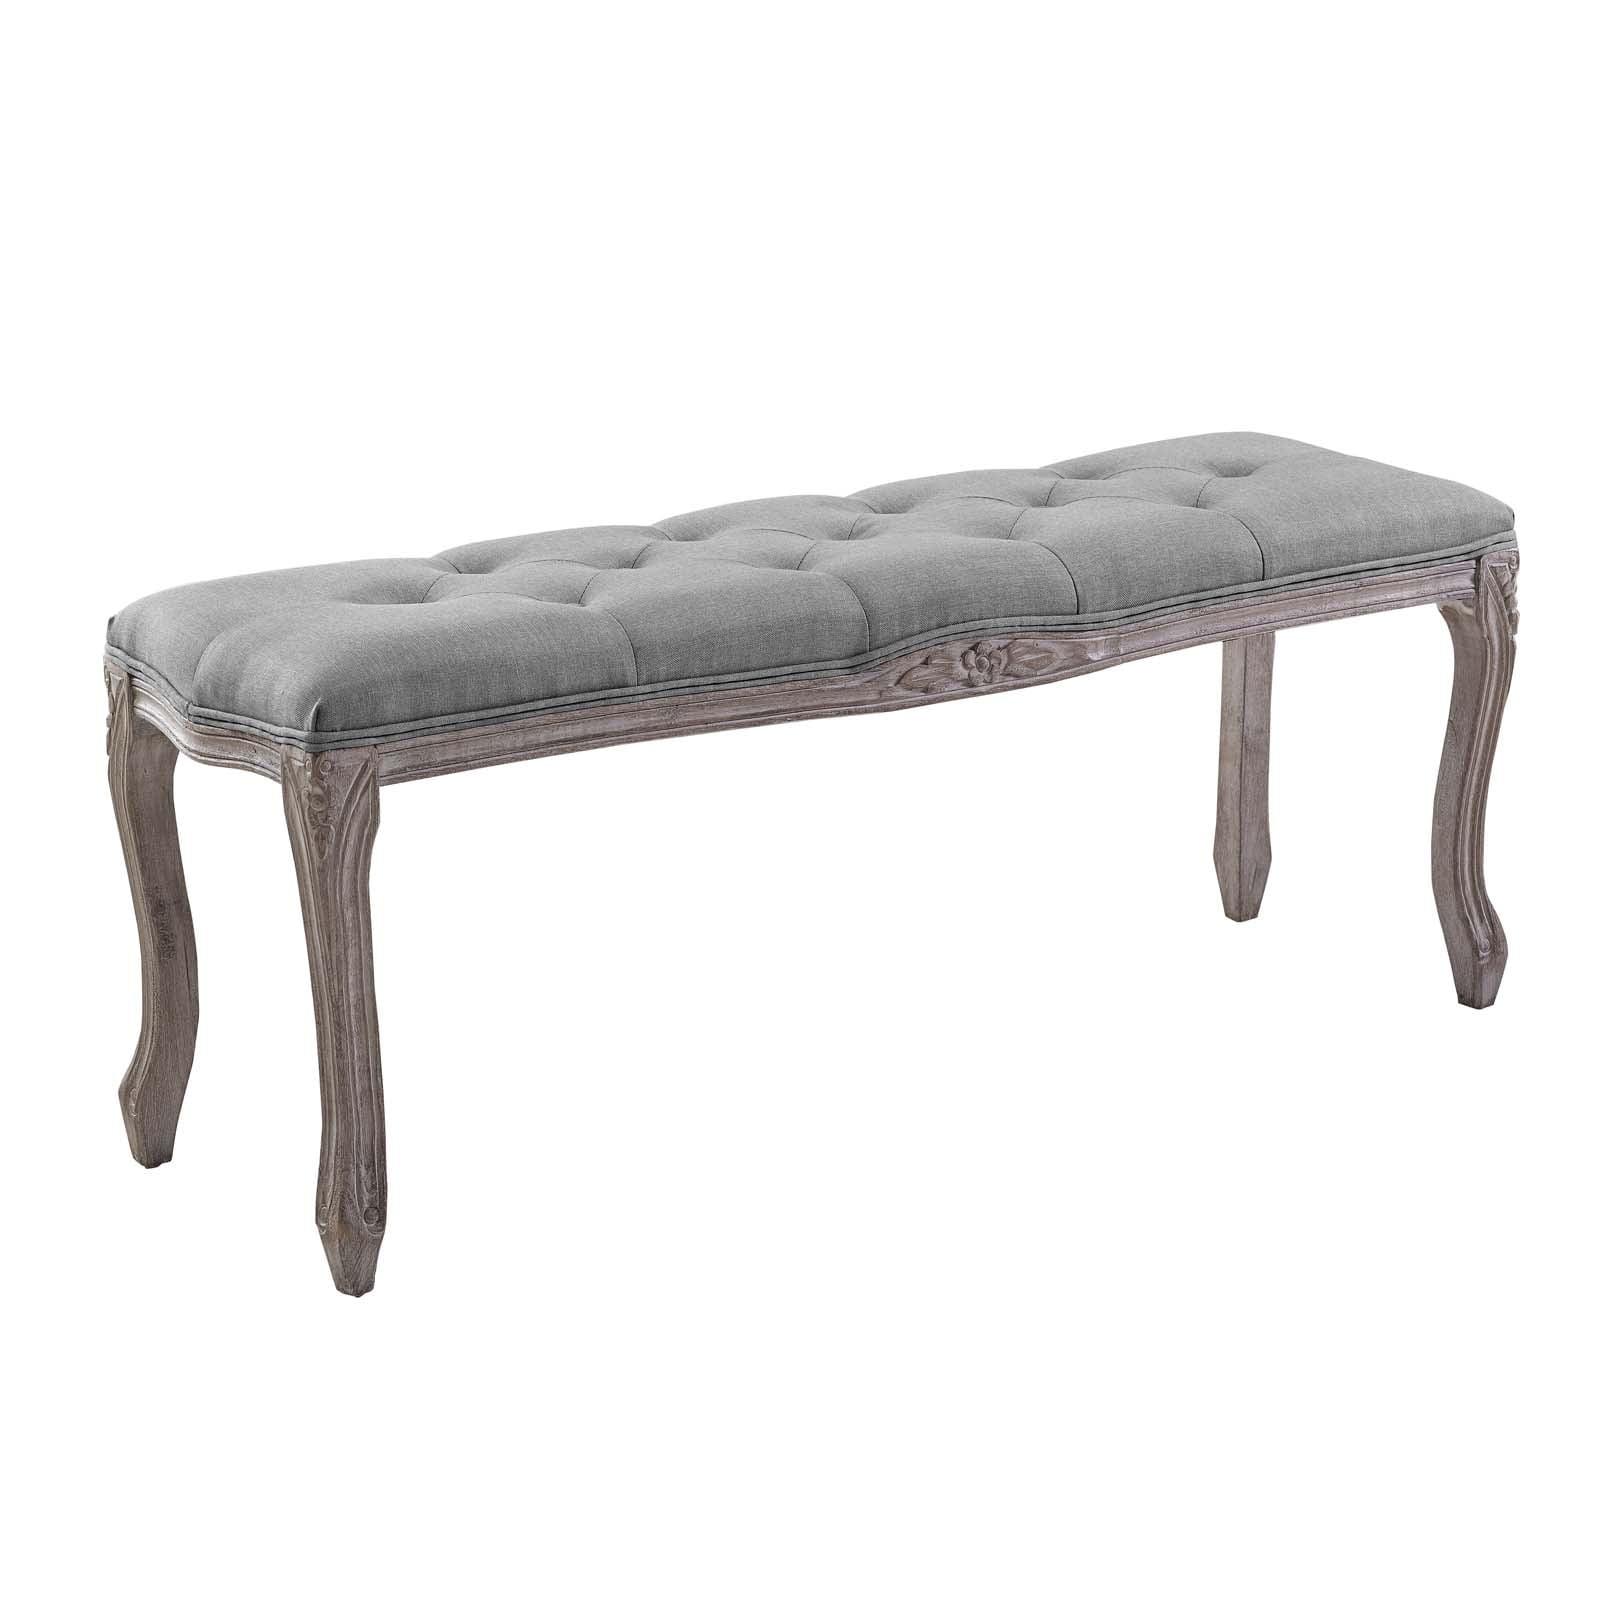 Elegant Vintage French Light Grey Upholstered Bench with Fluted Frame